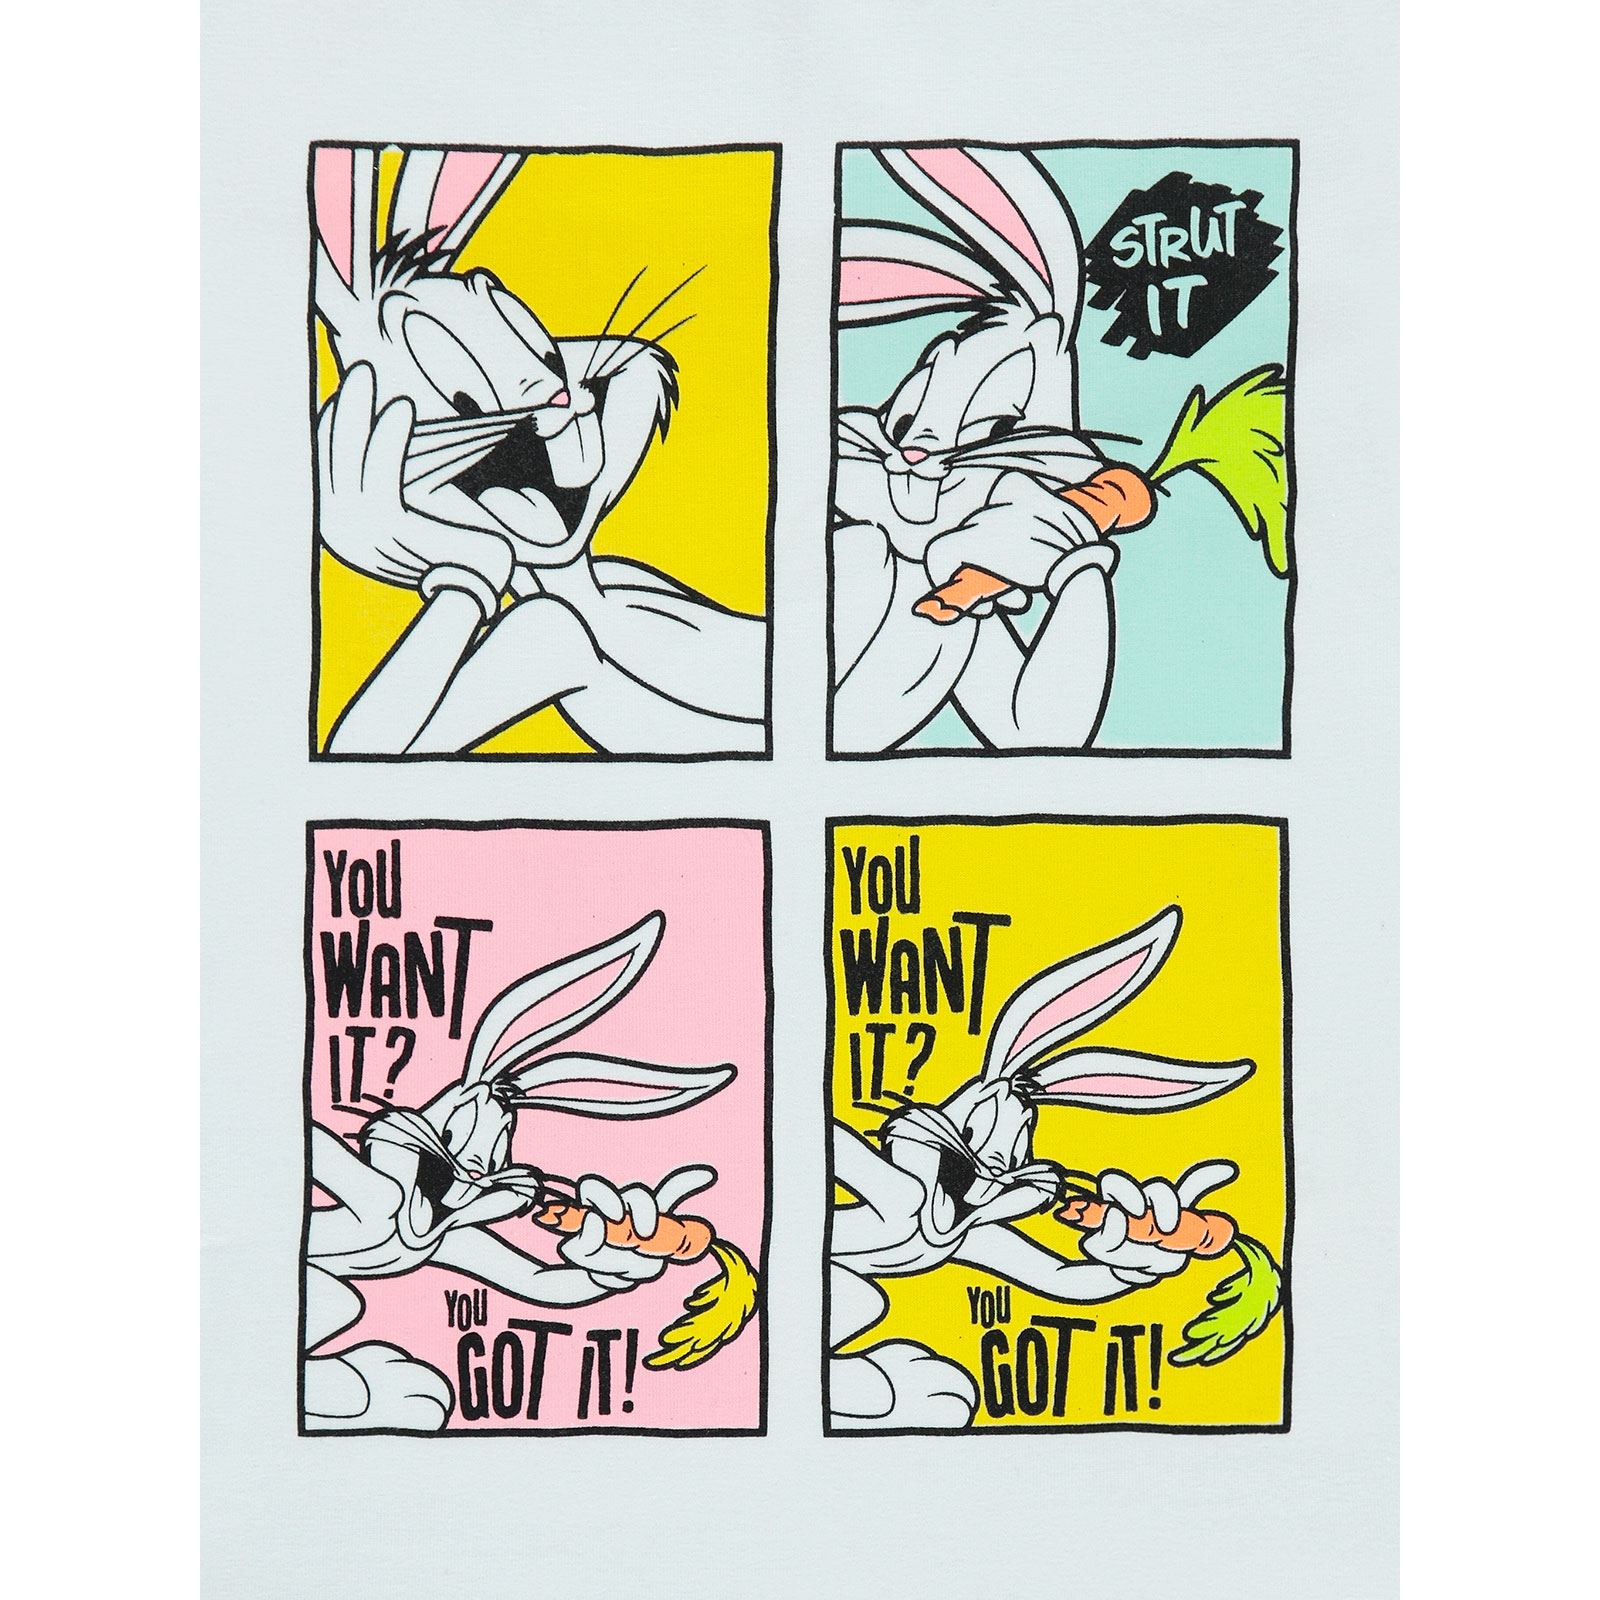 Bugs Bunny Kız Çocuk Tişört 6-9 Yaş Beyaz